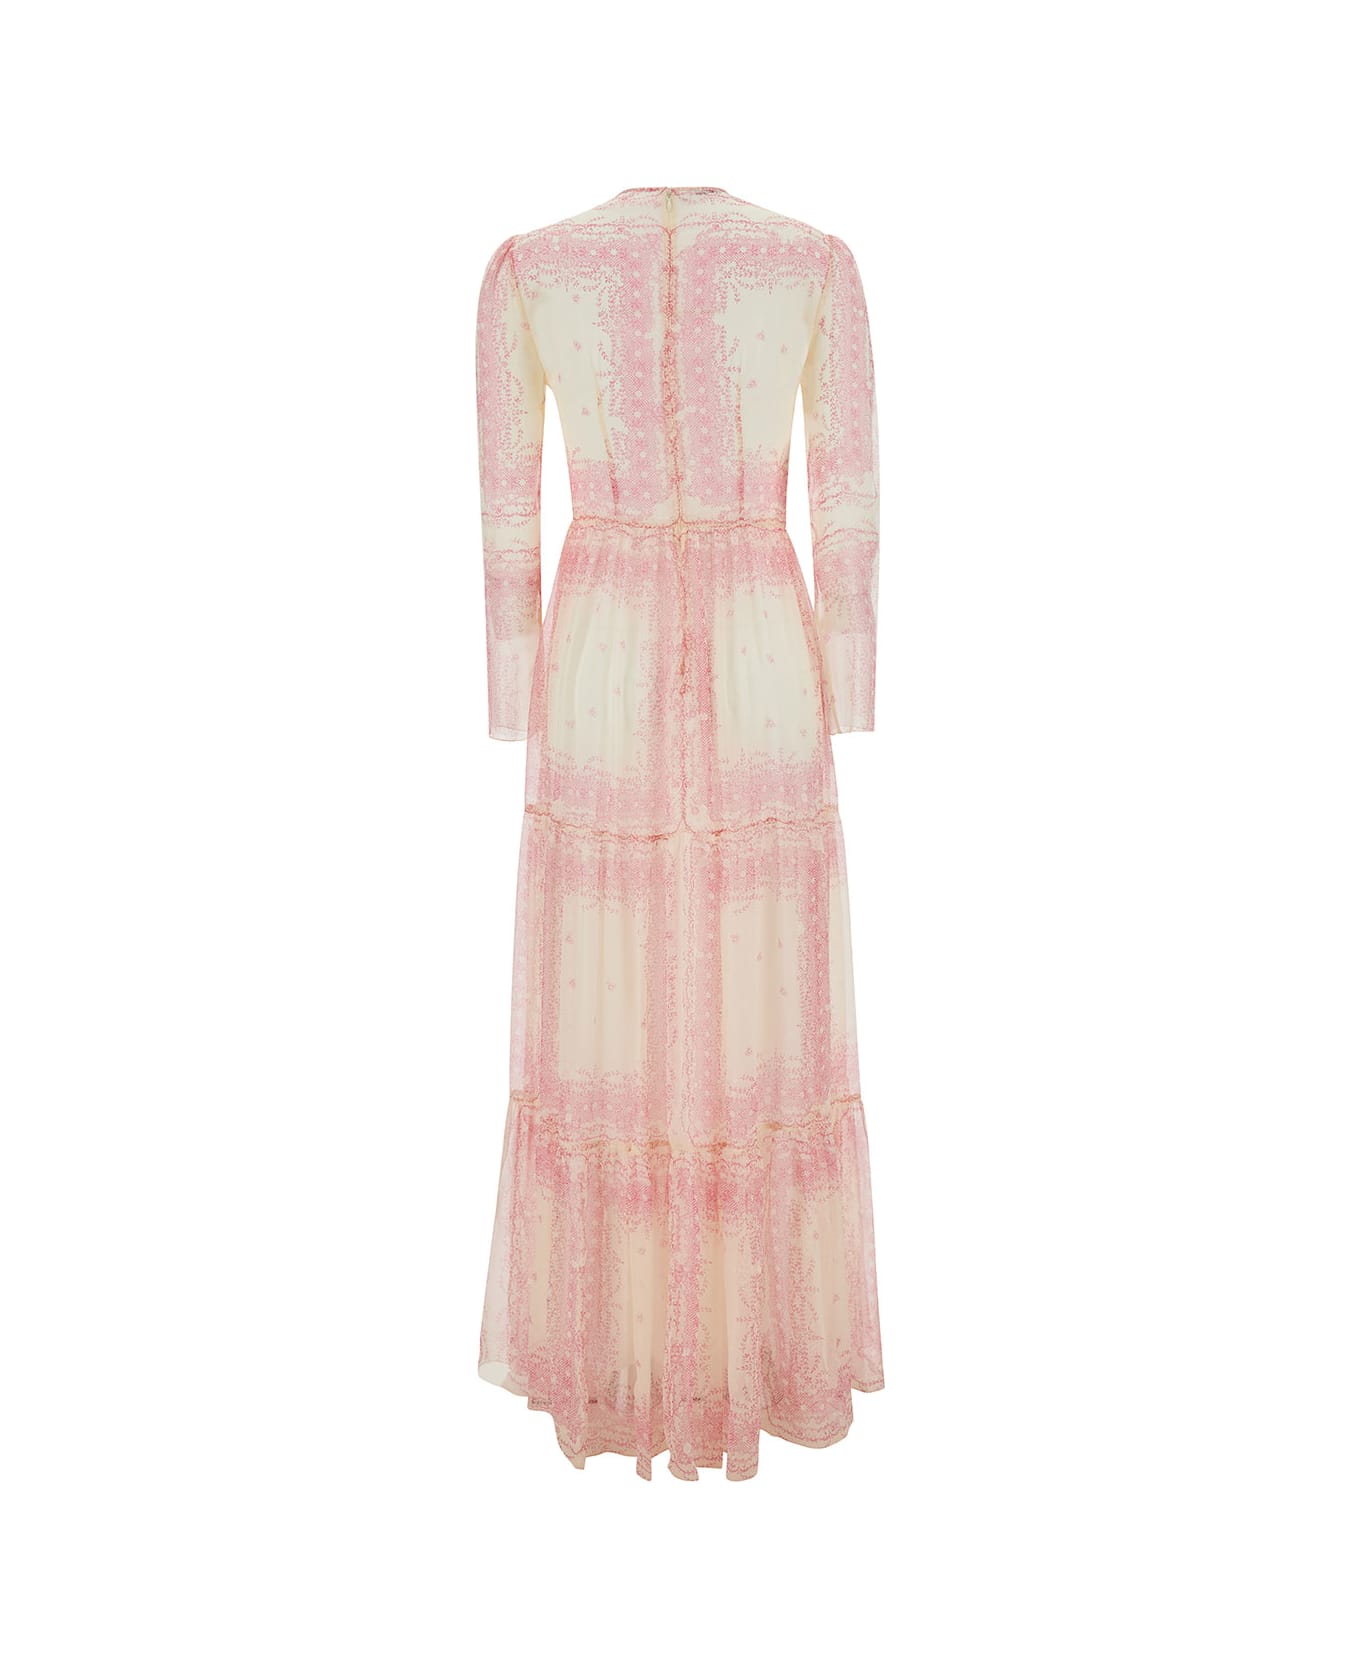 Philosophy di Lorenzo Serafini Maxi Pink Flounced Dress With Romantic Print In Silk Woman - Pink